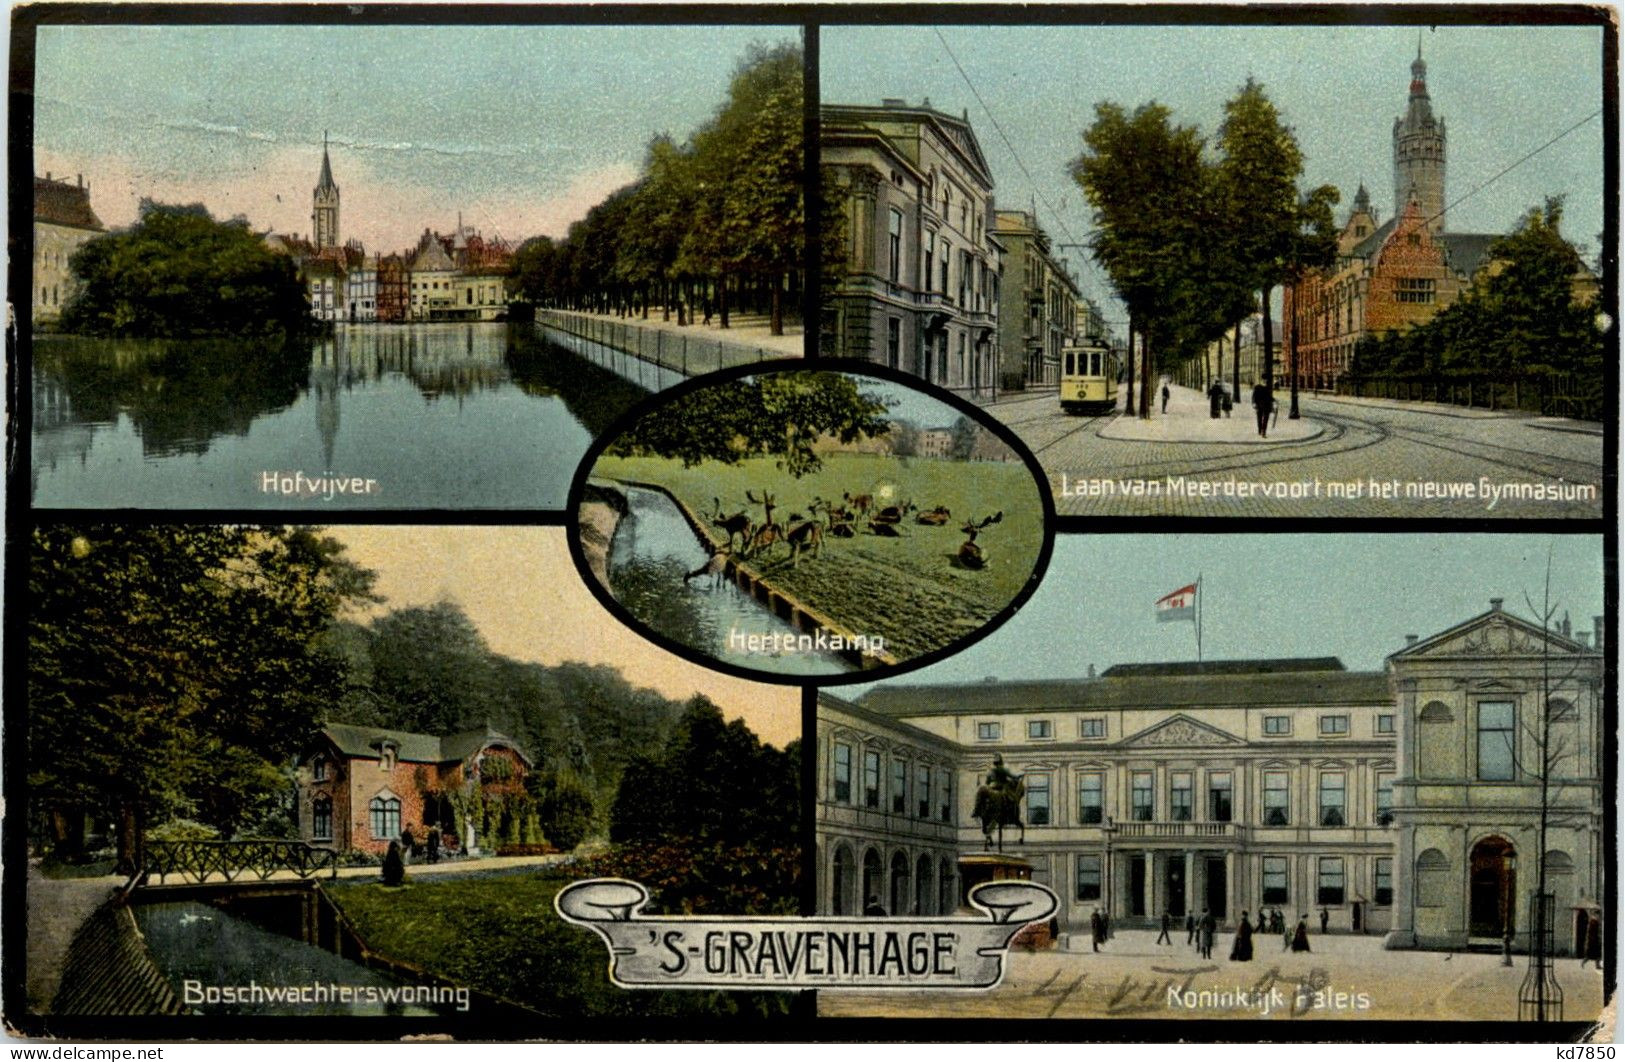 S Gravenhage - Den Haag ('s-Gravenhage)